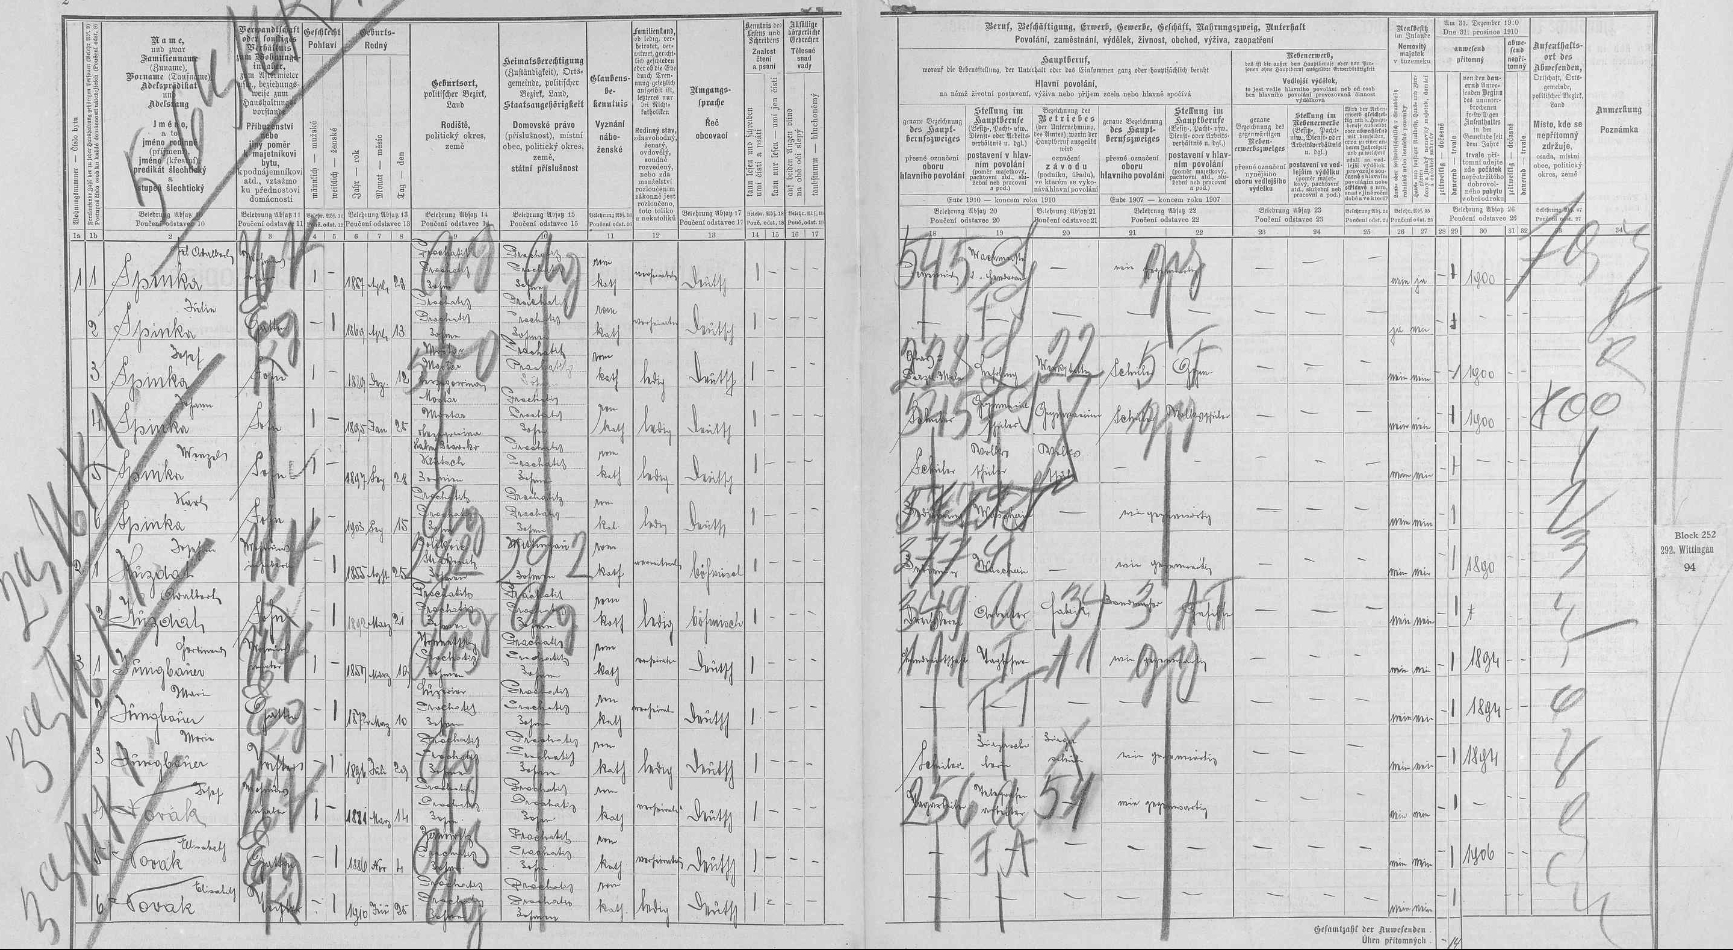 "Arch popisný" ke sčítání lidu z roku 1910 pro prachatický dům čp. 28 zachycuje rodinu Adalberta a Julie Spinkových (*1869) se čtyřmi jejich syny, Josefem (*1889), Johannem (*1895), Wenzelem (*1897) a Karlem (*1903)